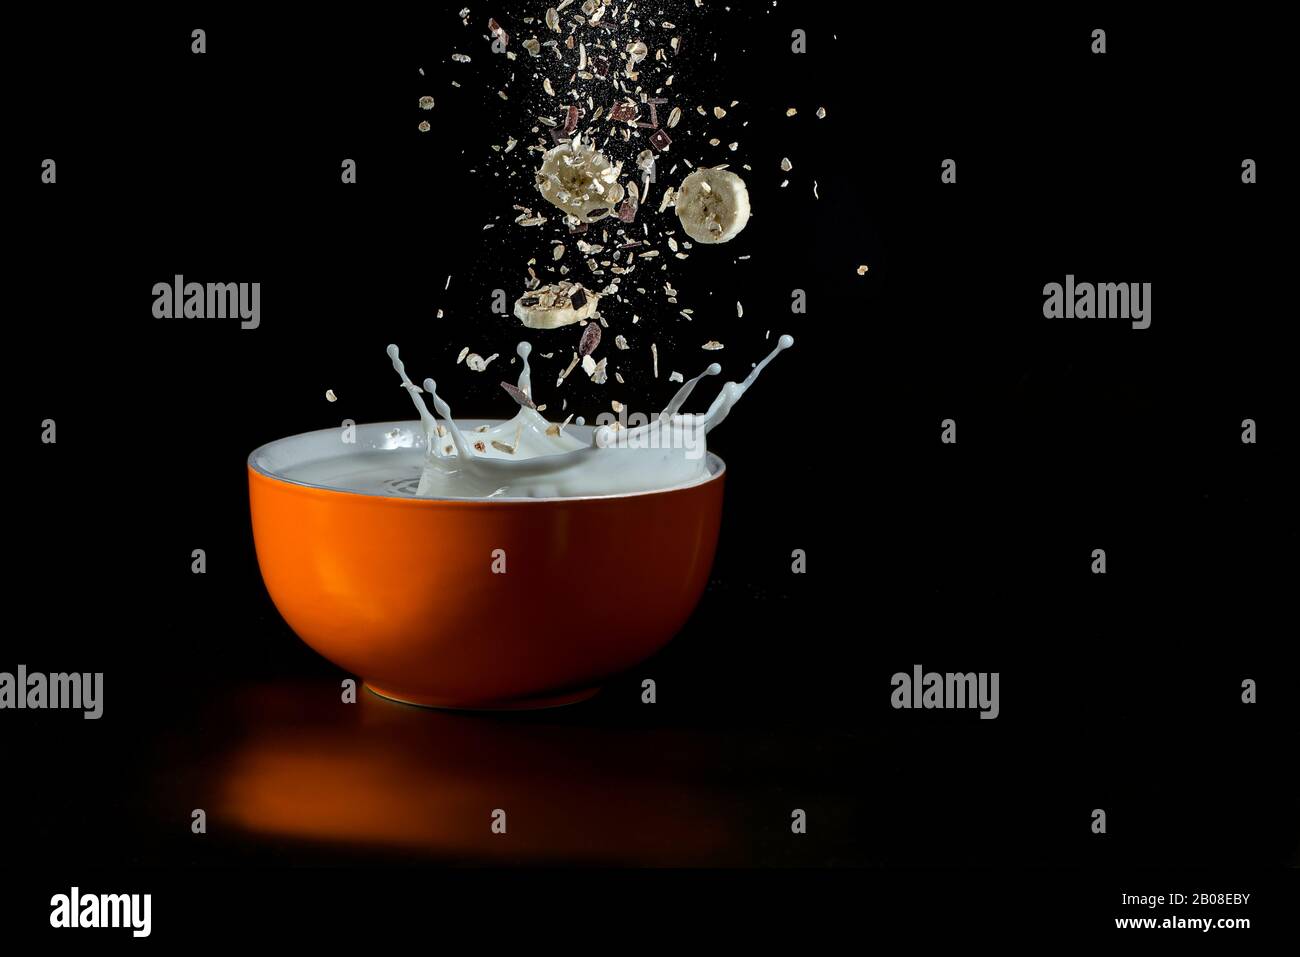 cereali che si levitano cadendo in una ciotola rossa con il latte schizzato - immagine ad alta velocità isolata su fondo nero Foto Stock